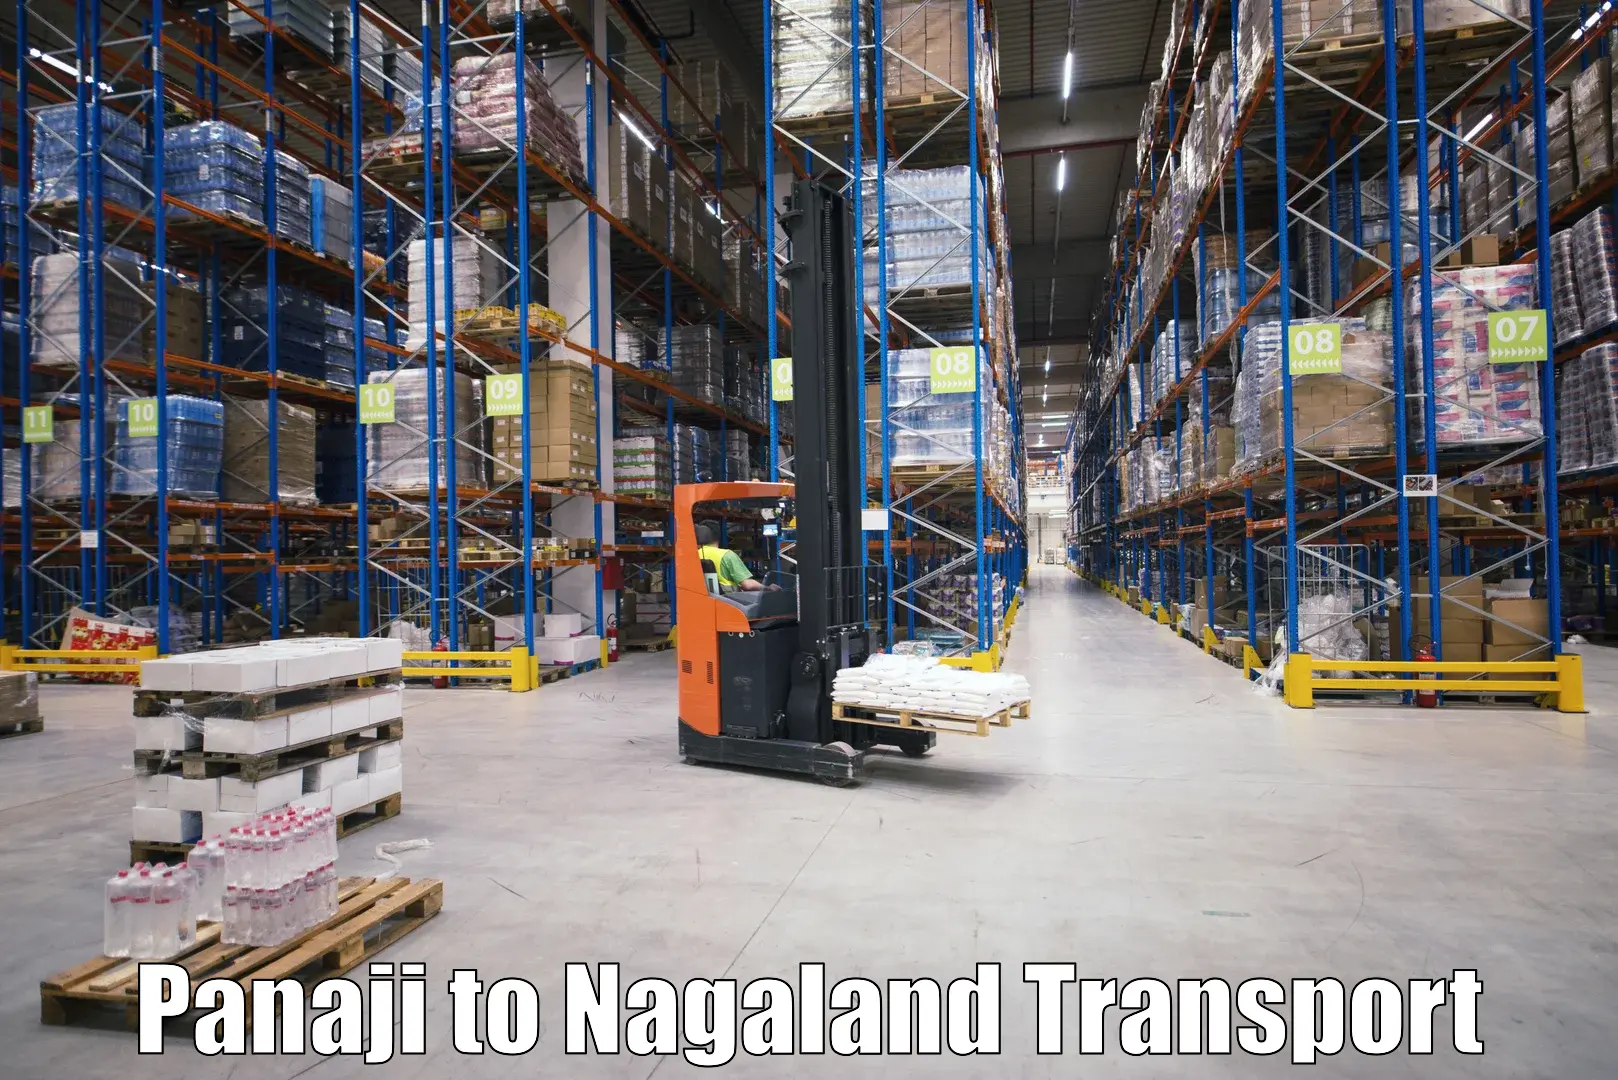 Express transport services Panaji to Nagaland